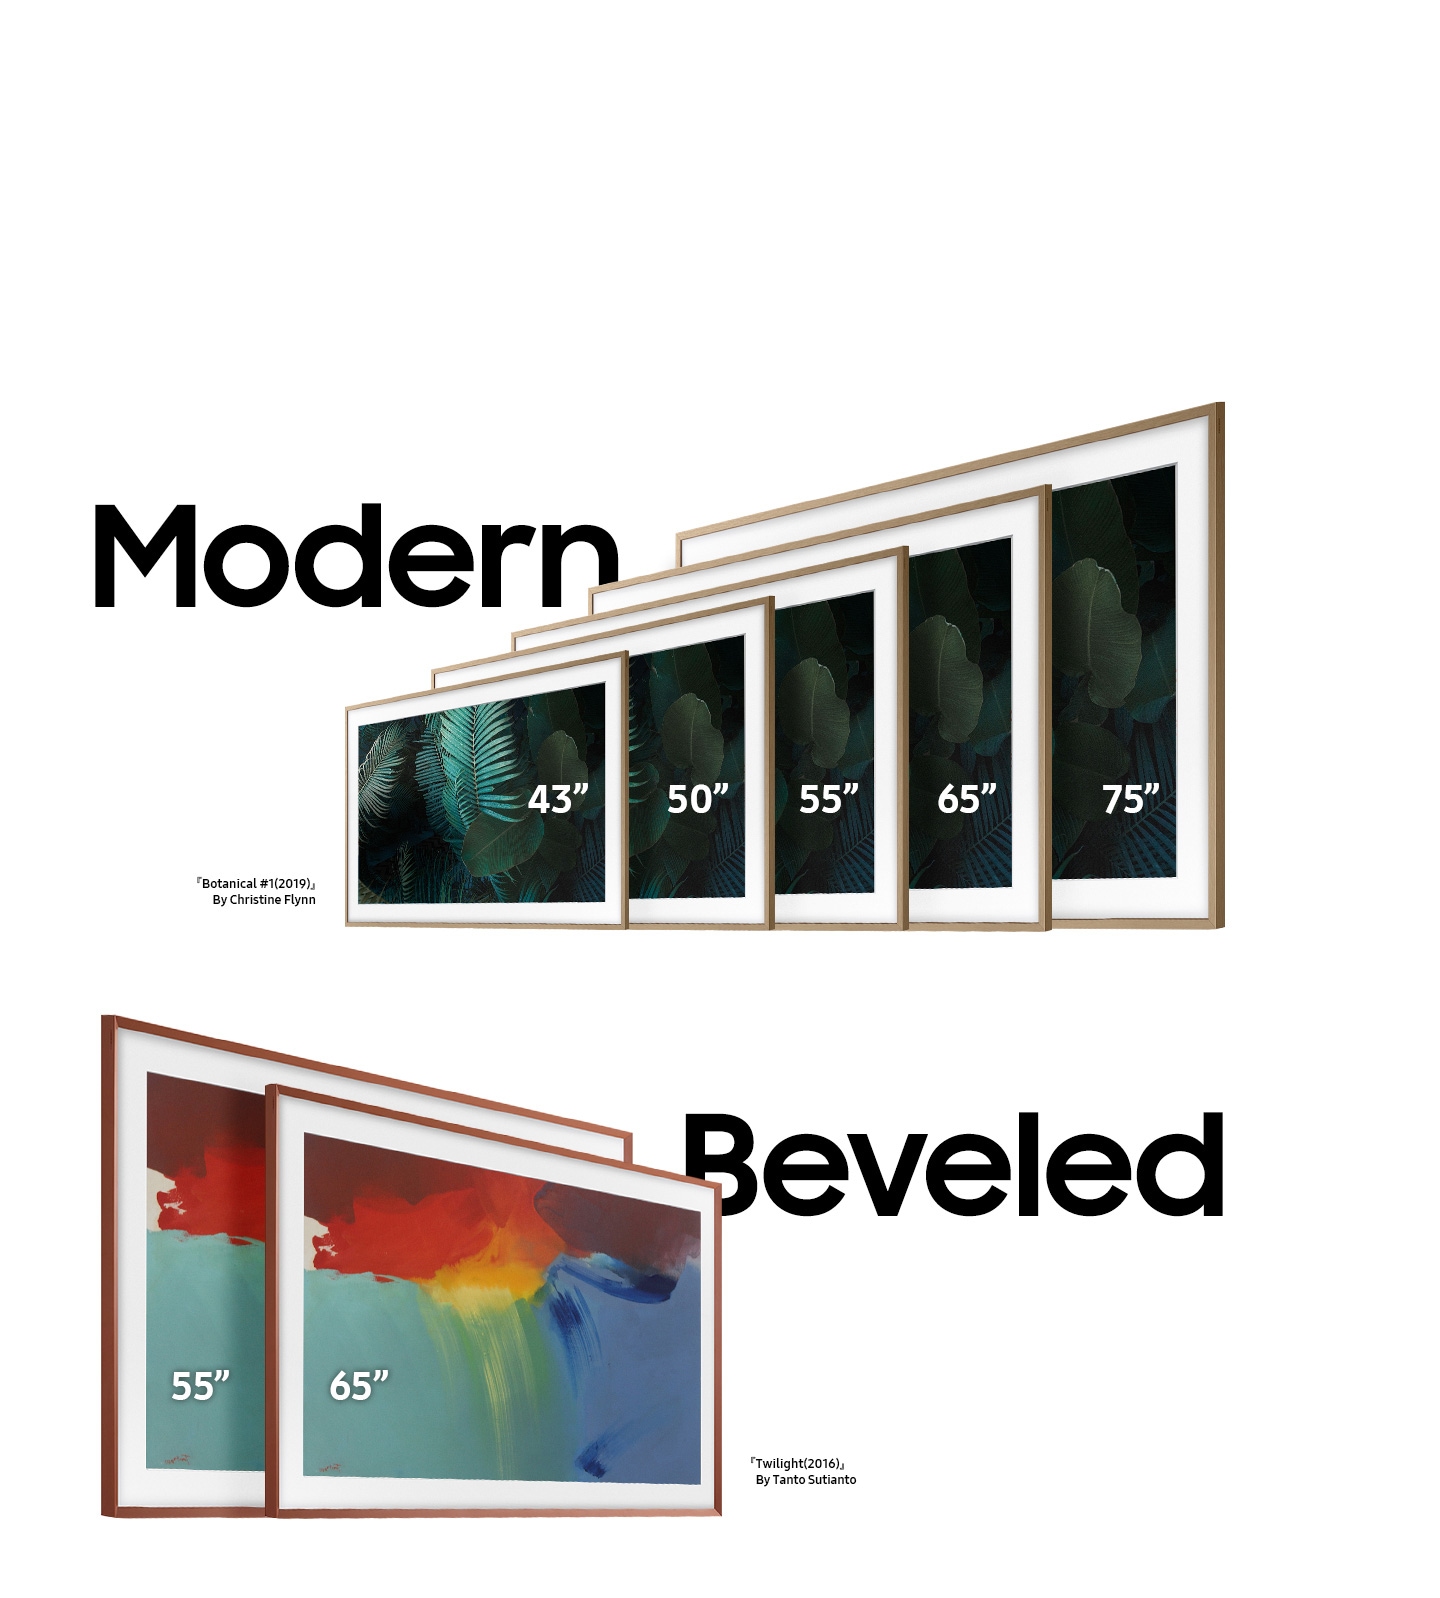 Koje su kompatibilne veličine okvira za Frame televizor?